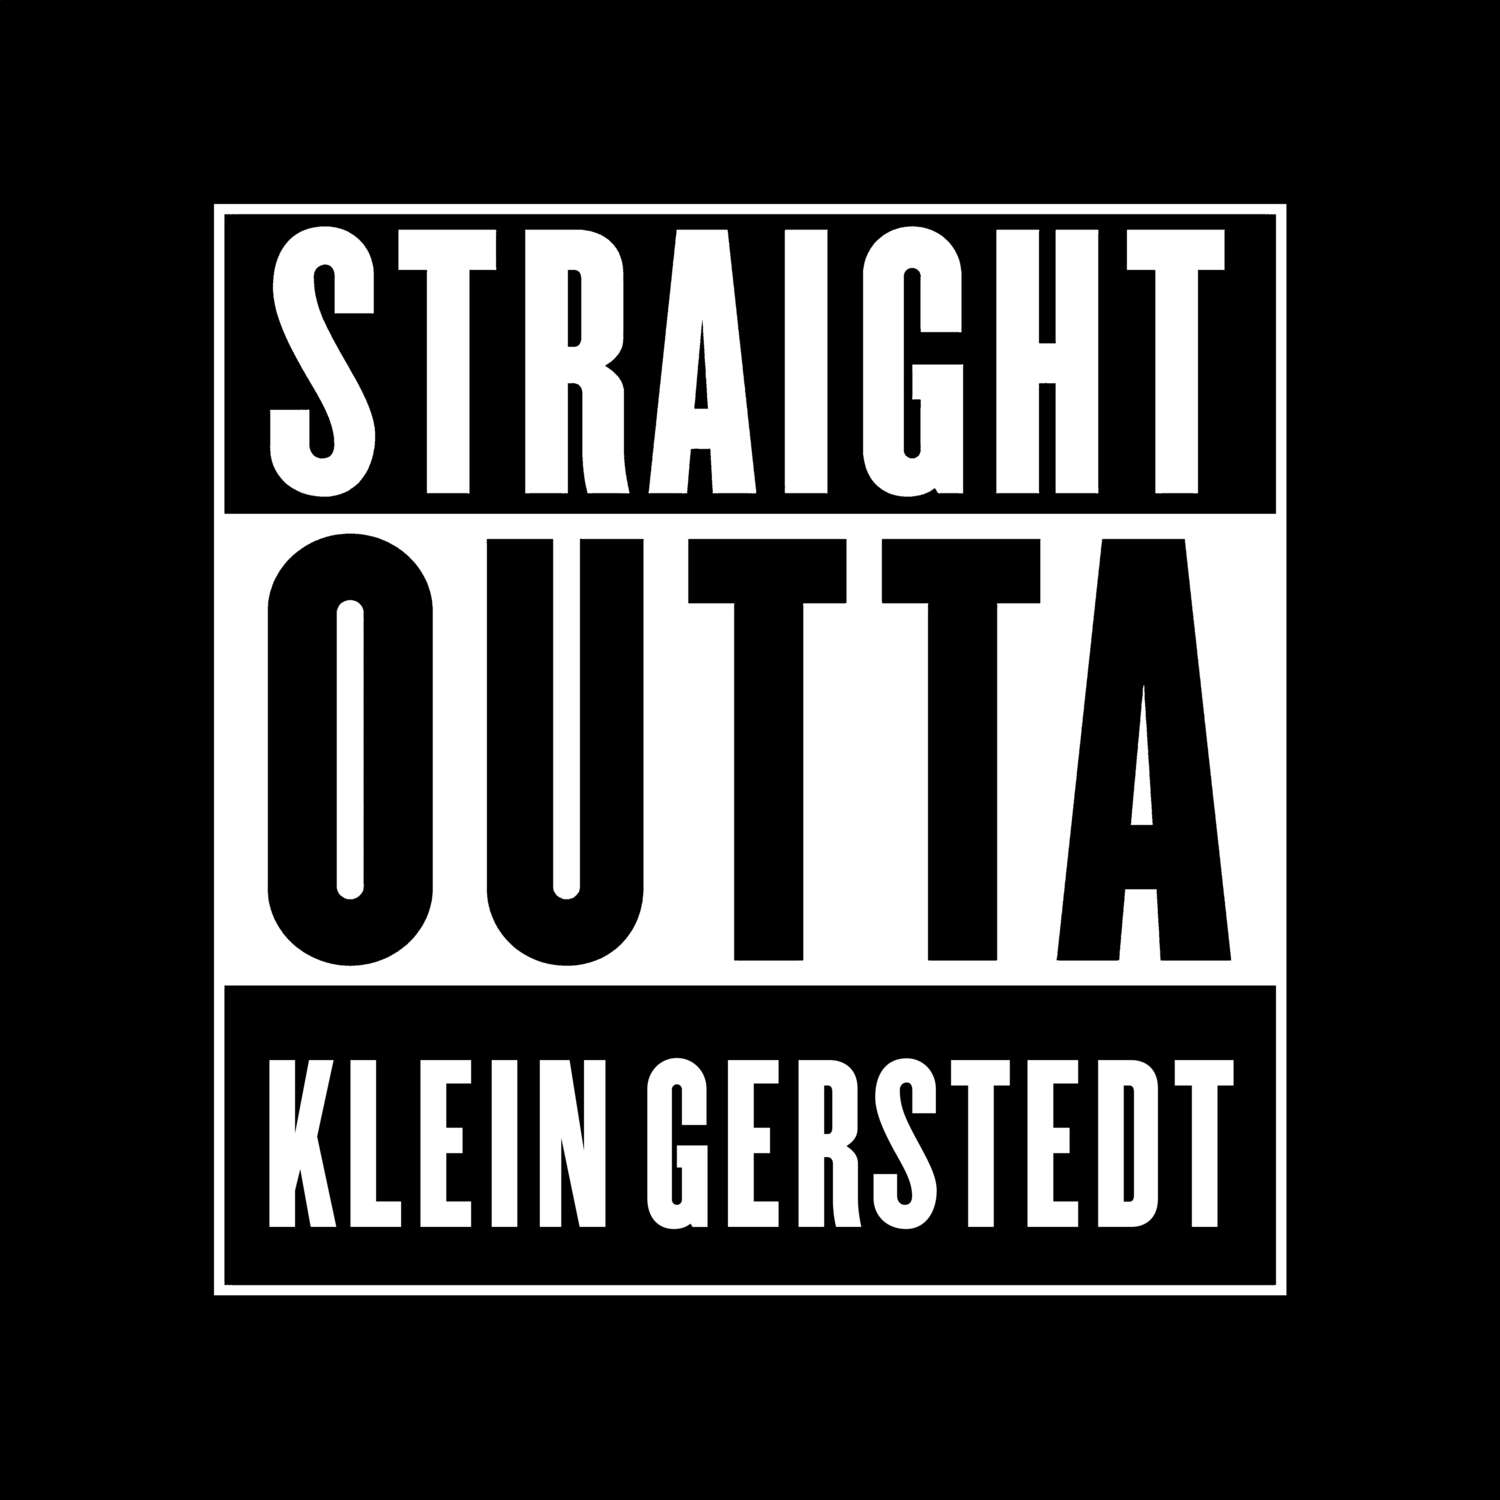 Klein Gerstedt T-Shirt »Straight Outta«